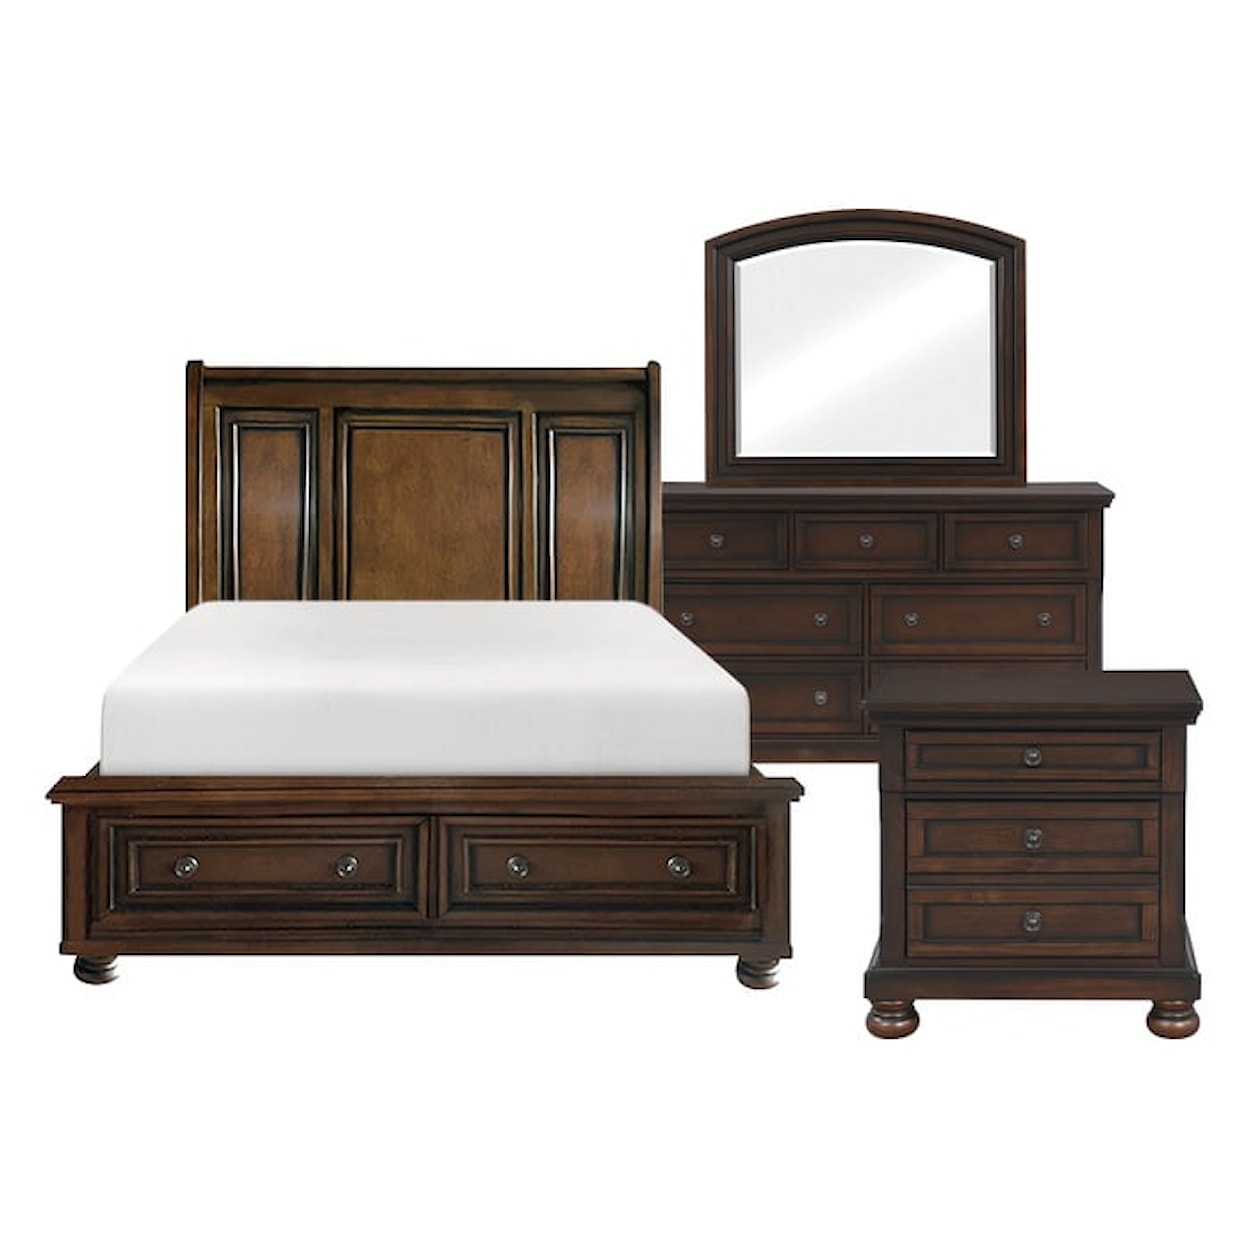 Homelegance Furniture Cumberland 4-Piece Queen Bedroom Set